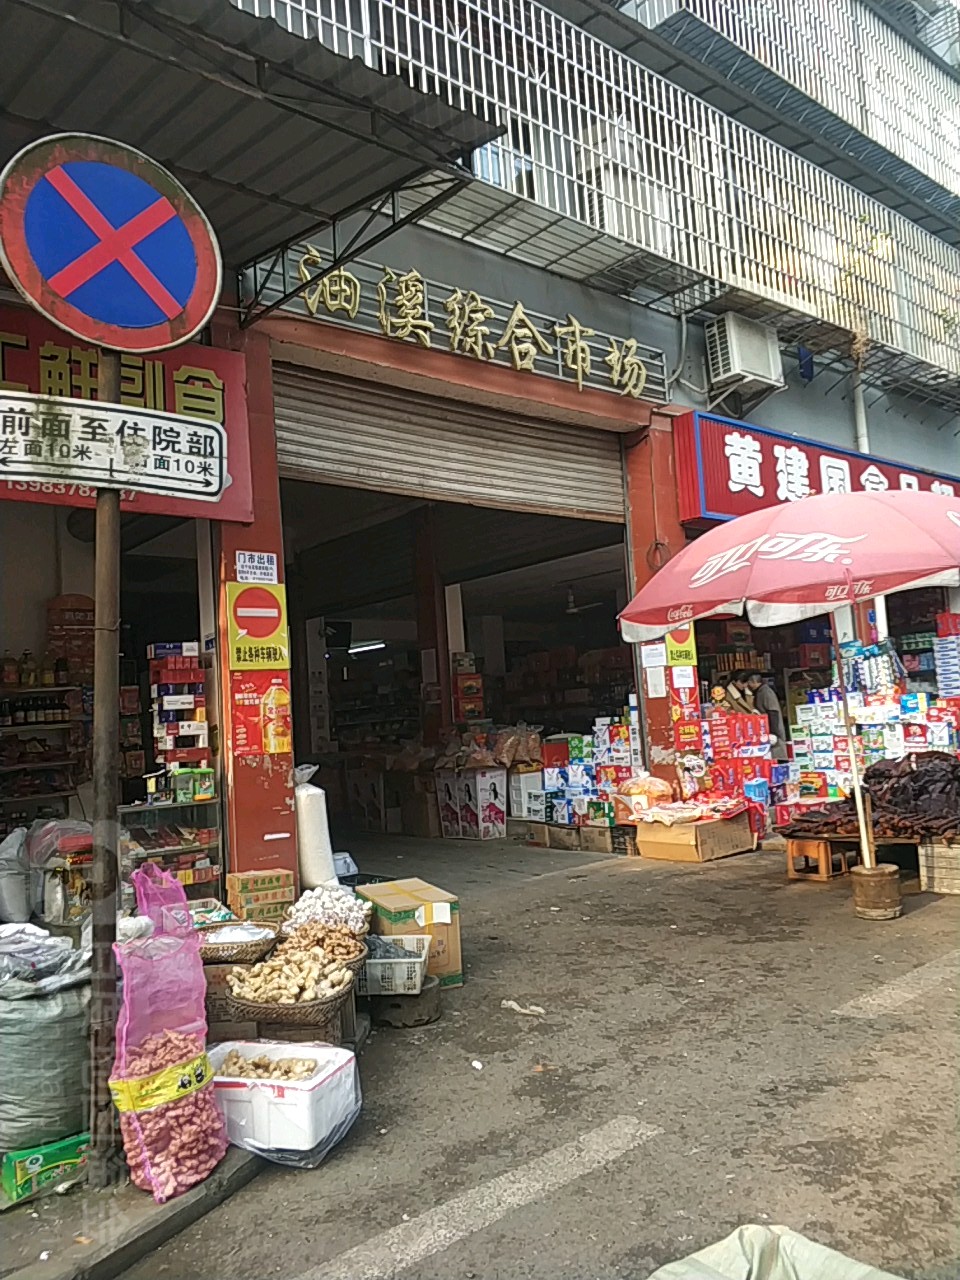 油溪湖综合农贸市场地址,电话,简介(重庆)